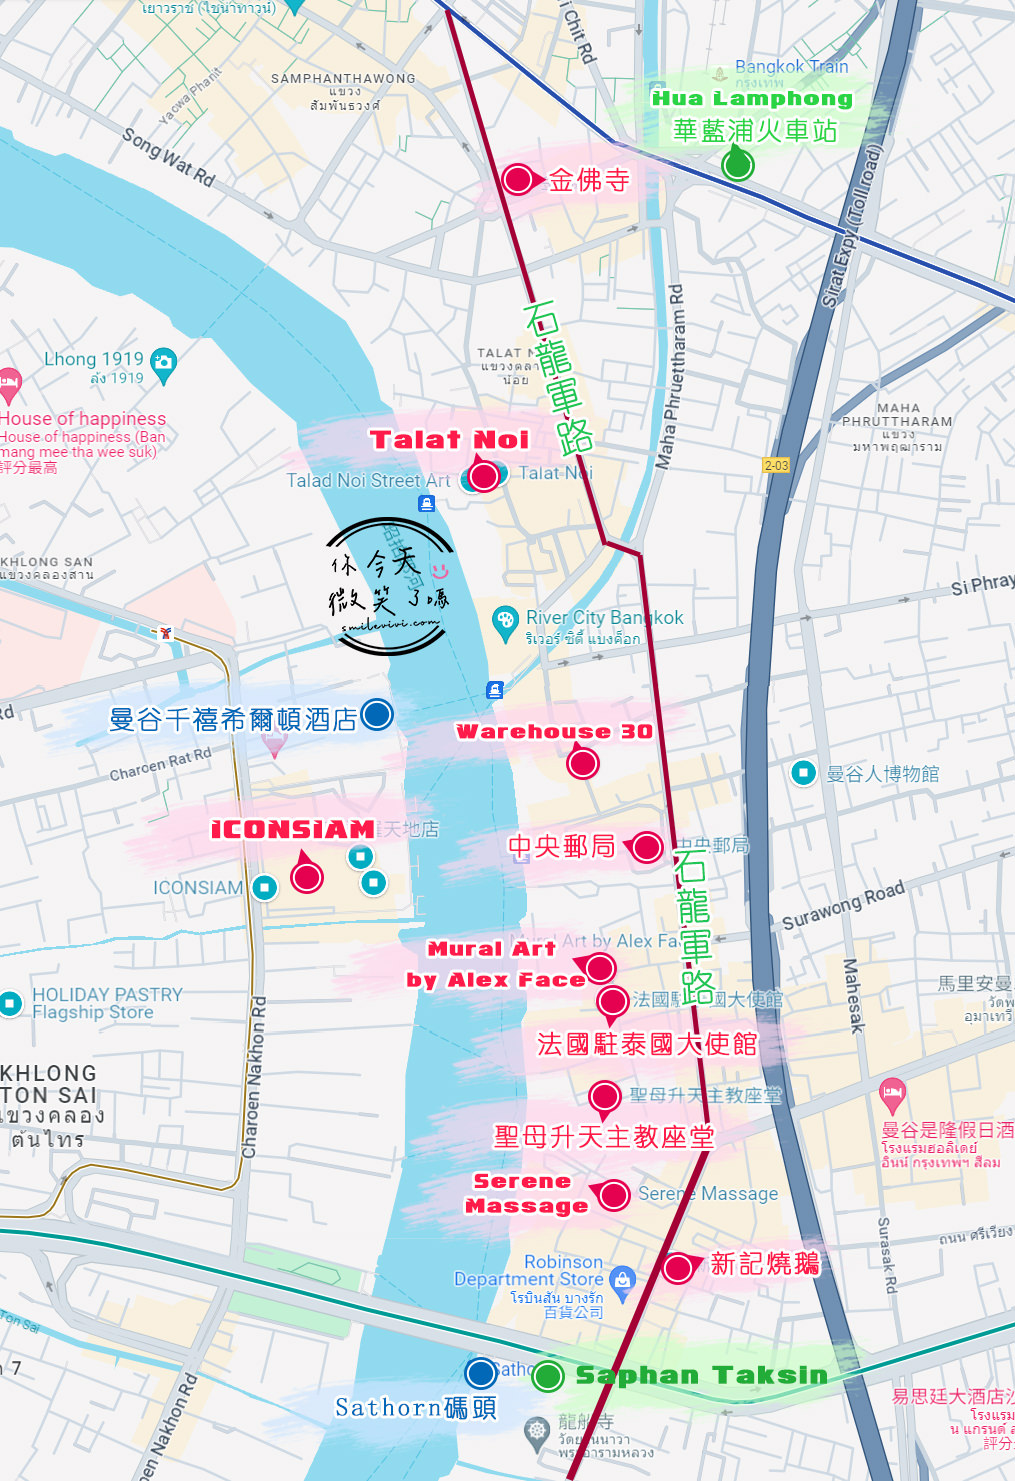 曼谷免費景點∥法國駐泰國大使館外壁畫，La France en Thaïlande立體彩繪︱免費拍照景點，外牆壁畫很好拍︱曼谷石龍軍路散策︱曼谷景點 1 Charoen Krung map